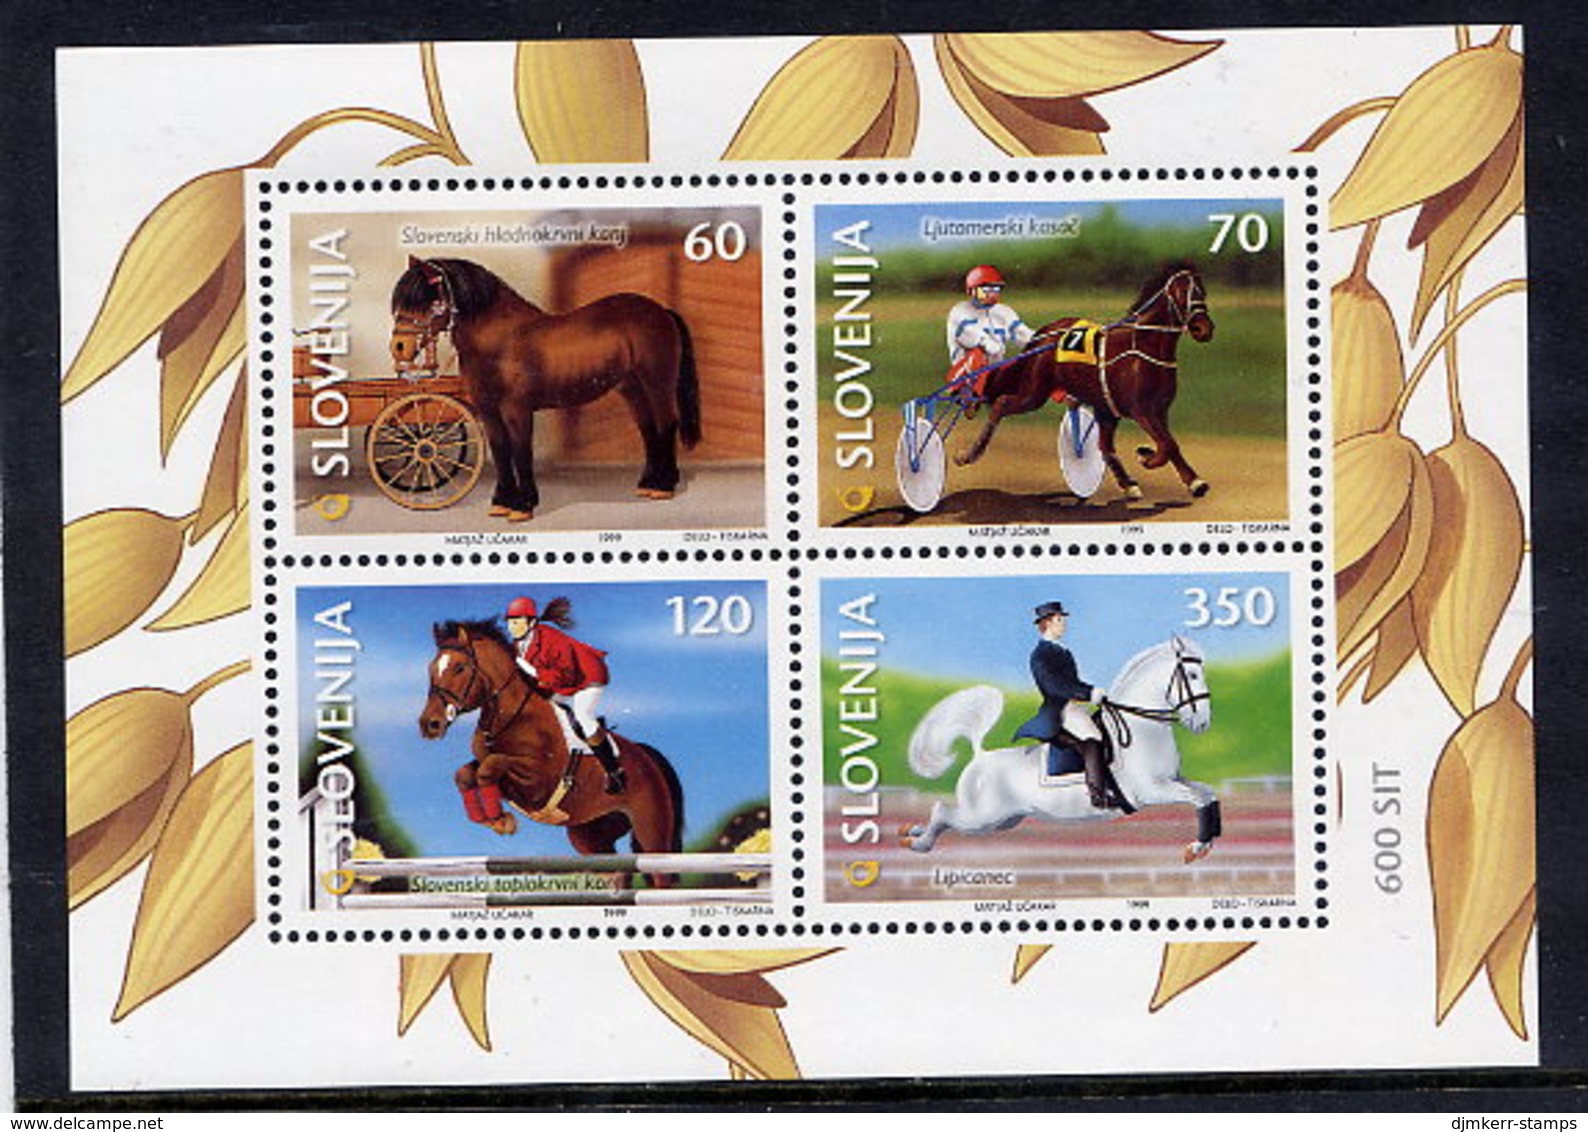 SLOVENIA 1999 Horses: Equestrian Sports Block MNH / **.  Michel Block 9 - Slovenia